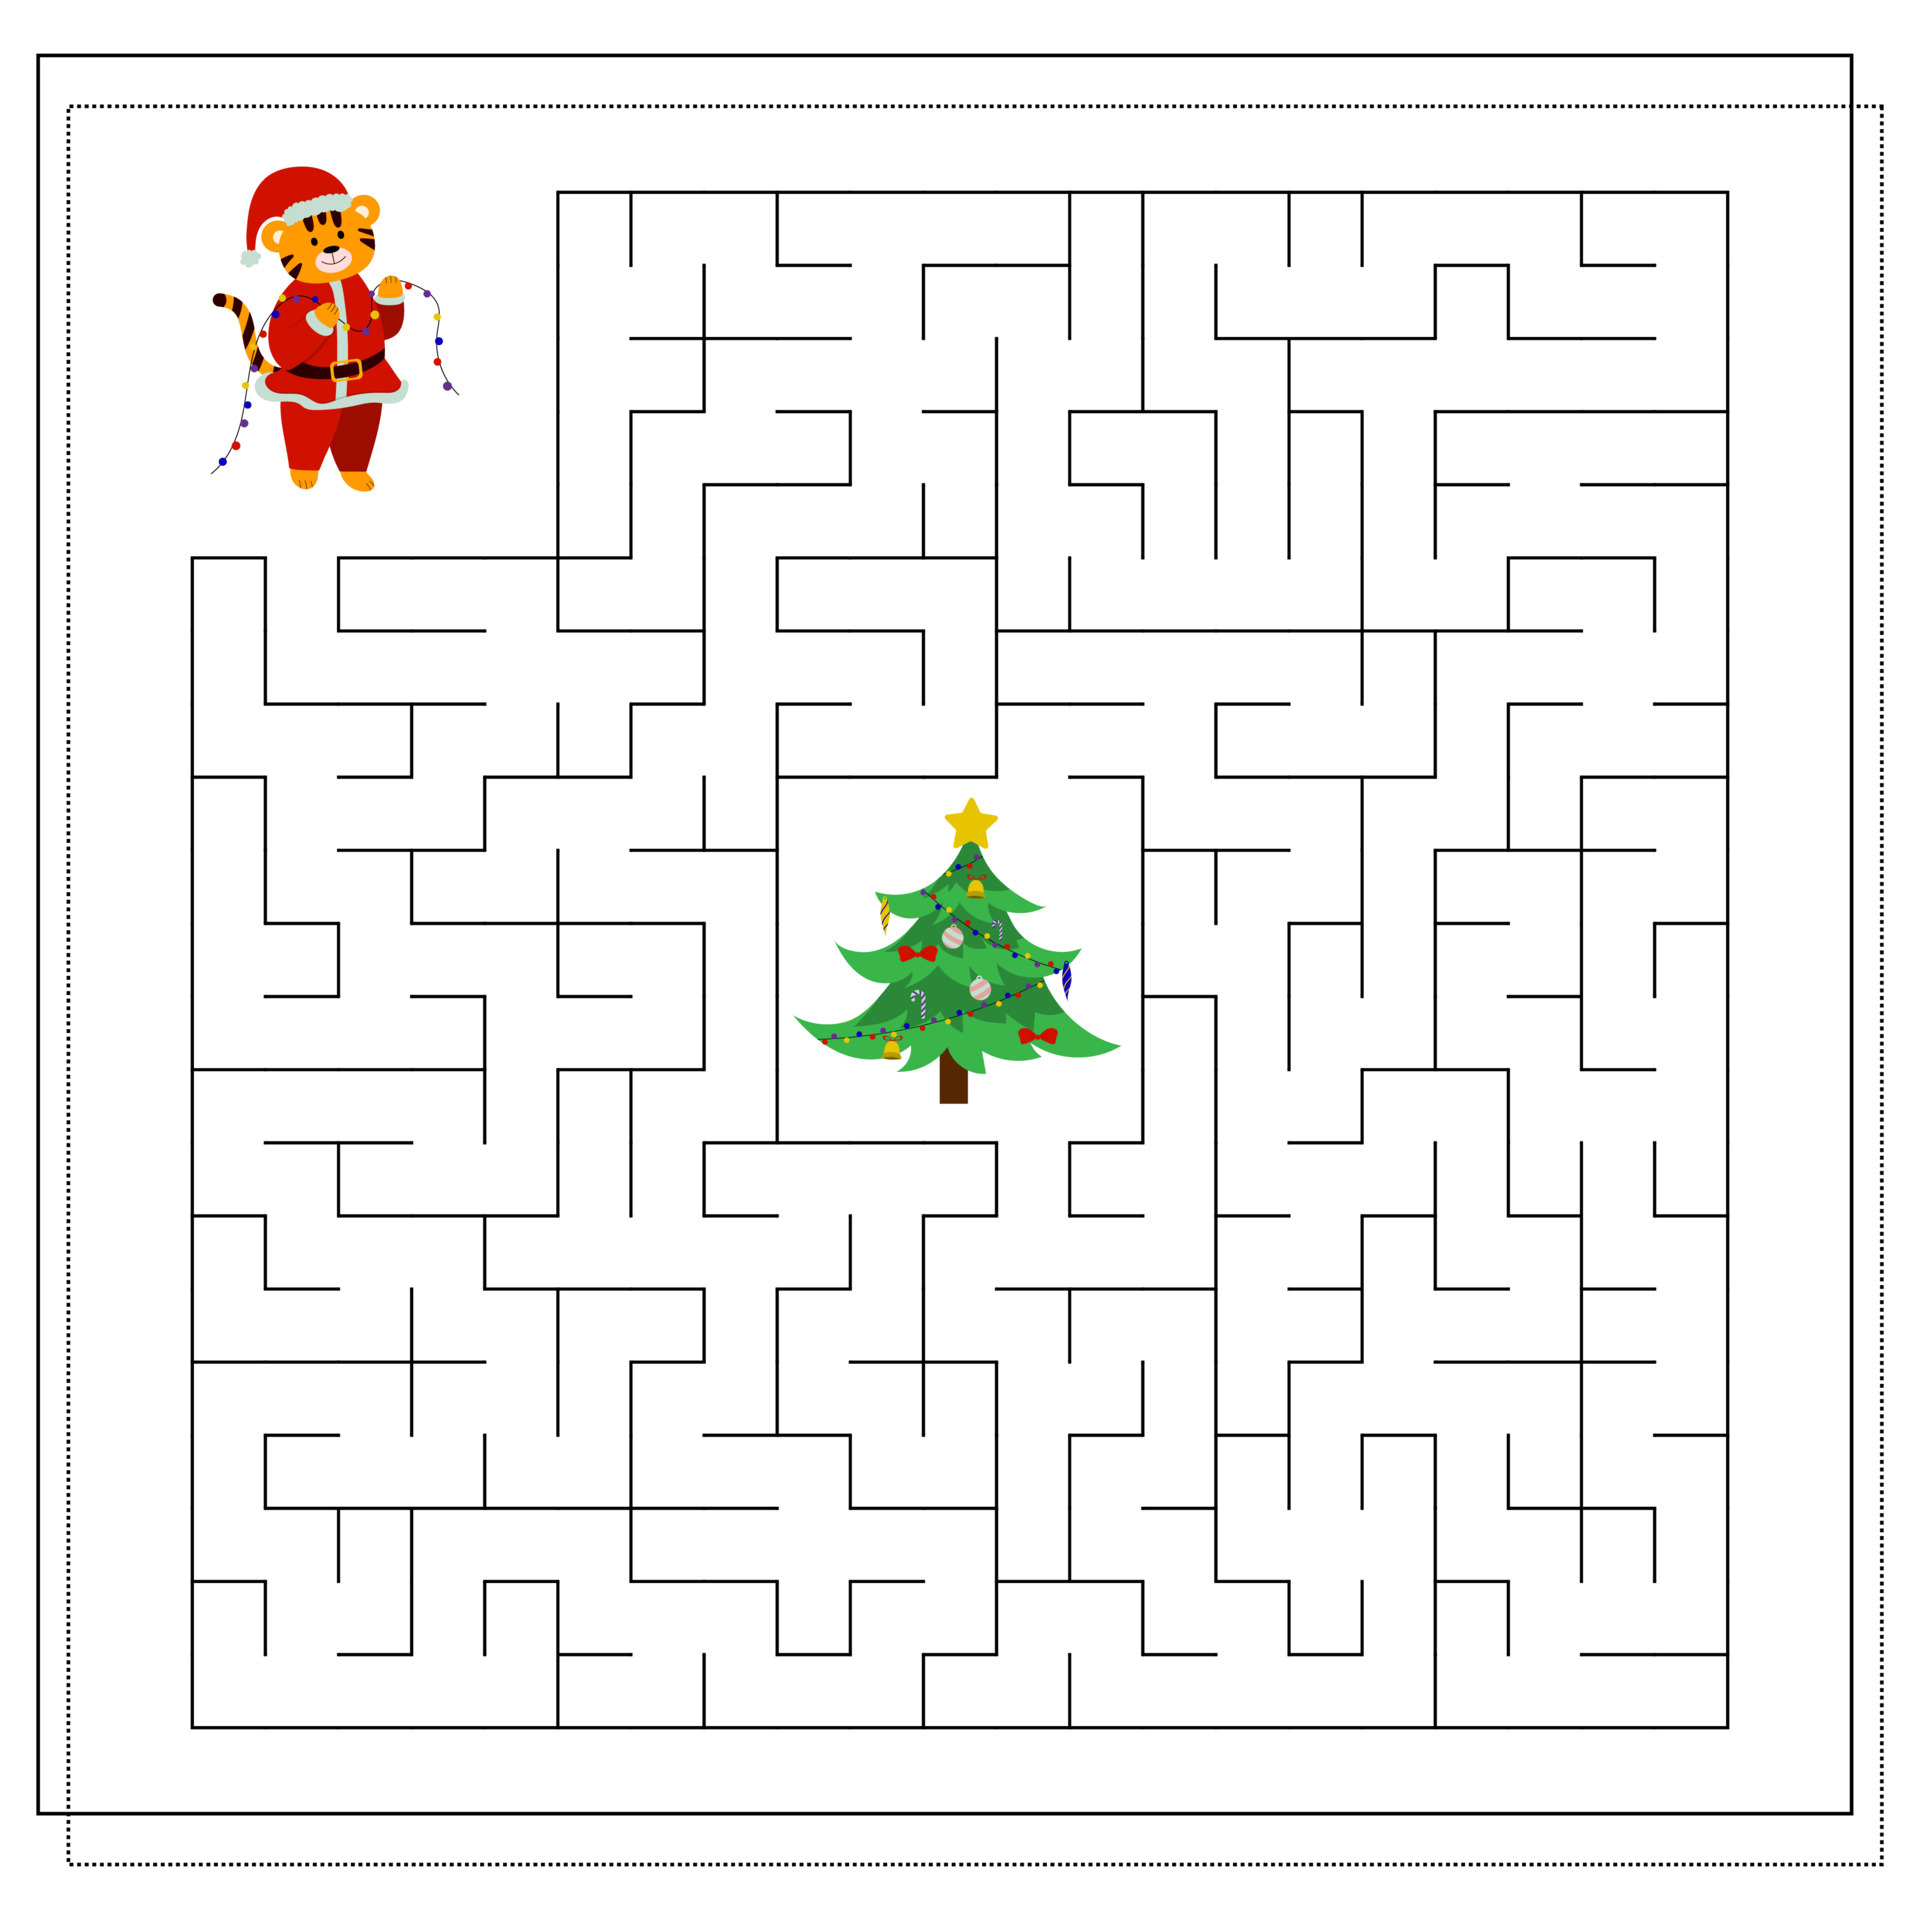 um jogo de lógica para crianças. completar o labirinto. um tigre